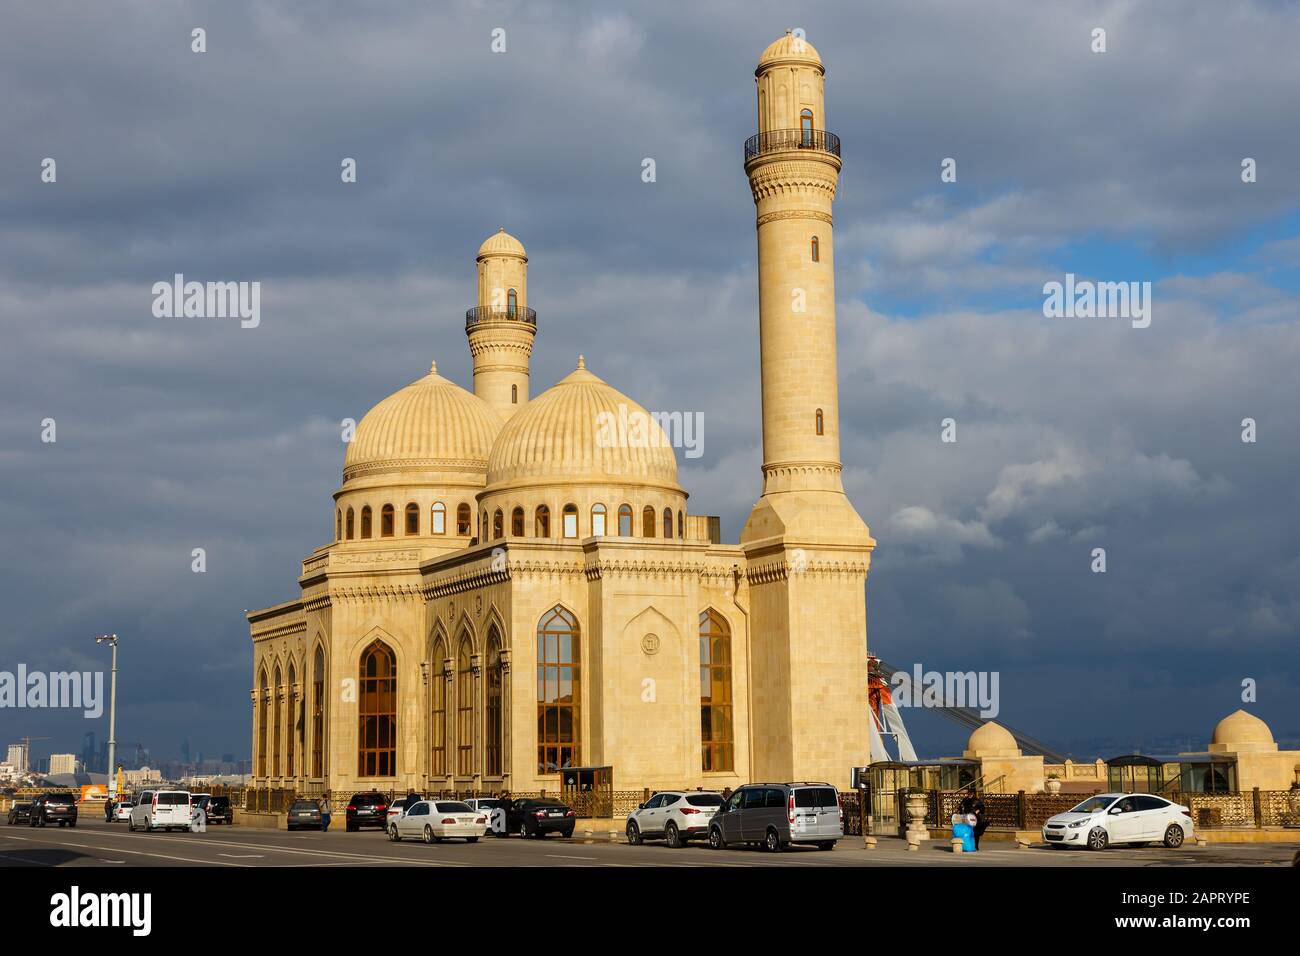 Baku, Azerbaijan - November 14, 2019: The Bibi-Heybat Mosque is a historical mosque in Baku. Azerbaijan Stock Photo